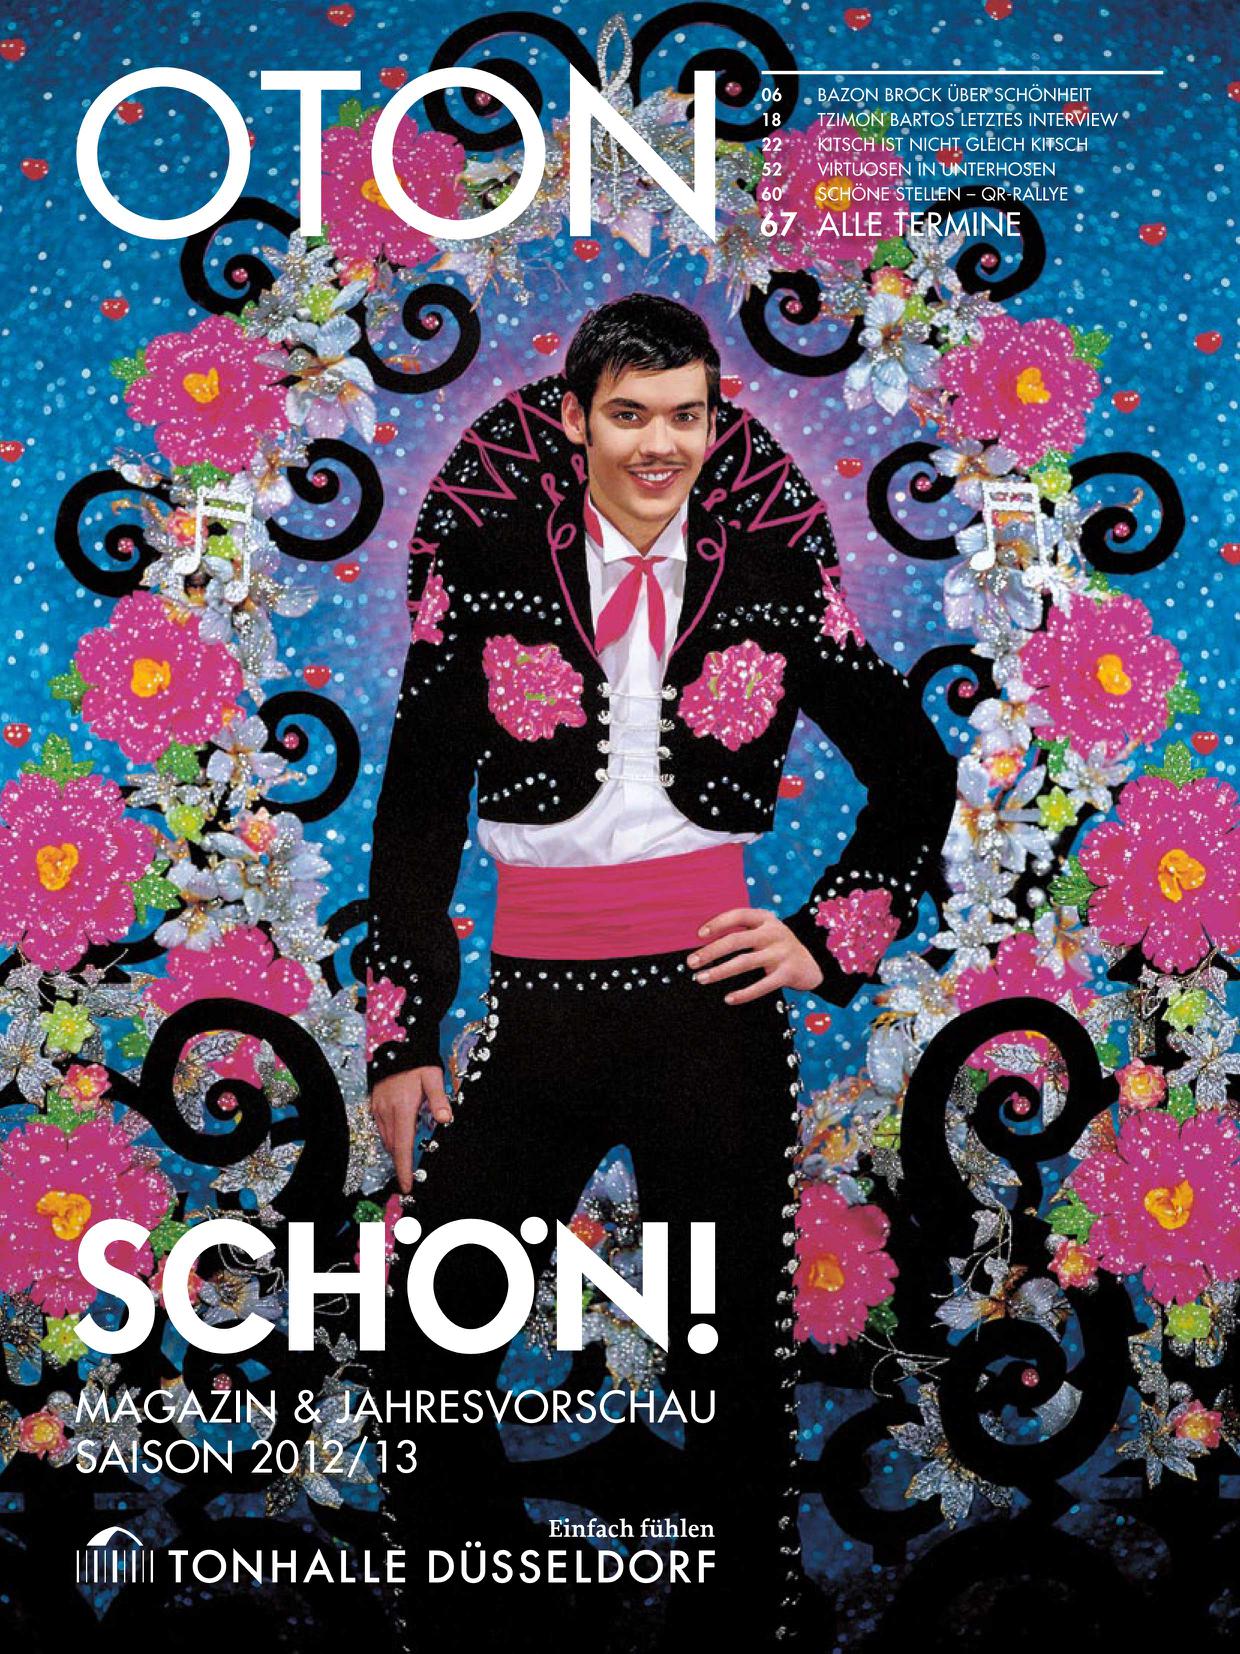 OTON, Bild: Magazin & Jahresvorschau Saison 2012/13, Tonhalle Düsseldorf.